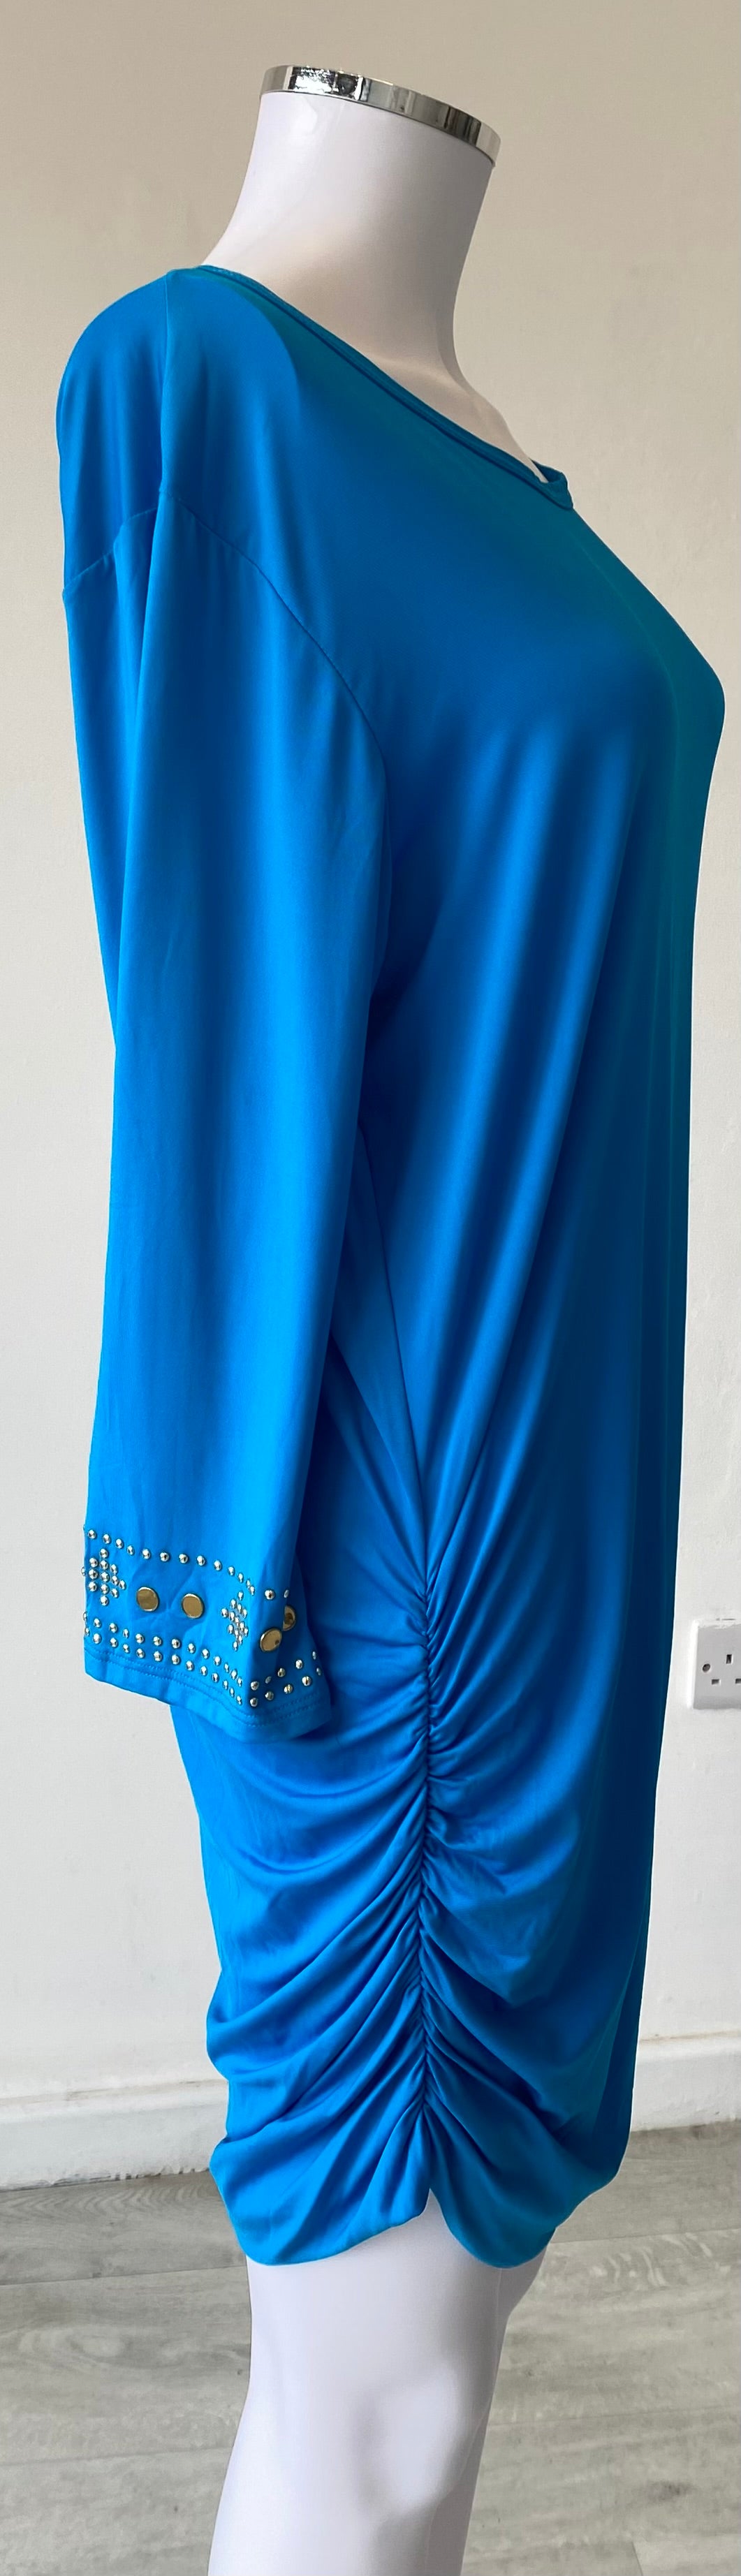 Michael Michael Kors Blue Summer Dress Size 10